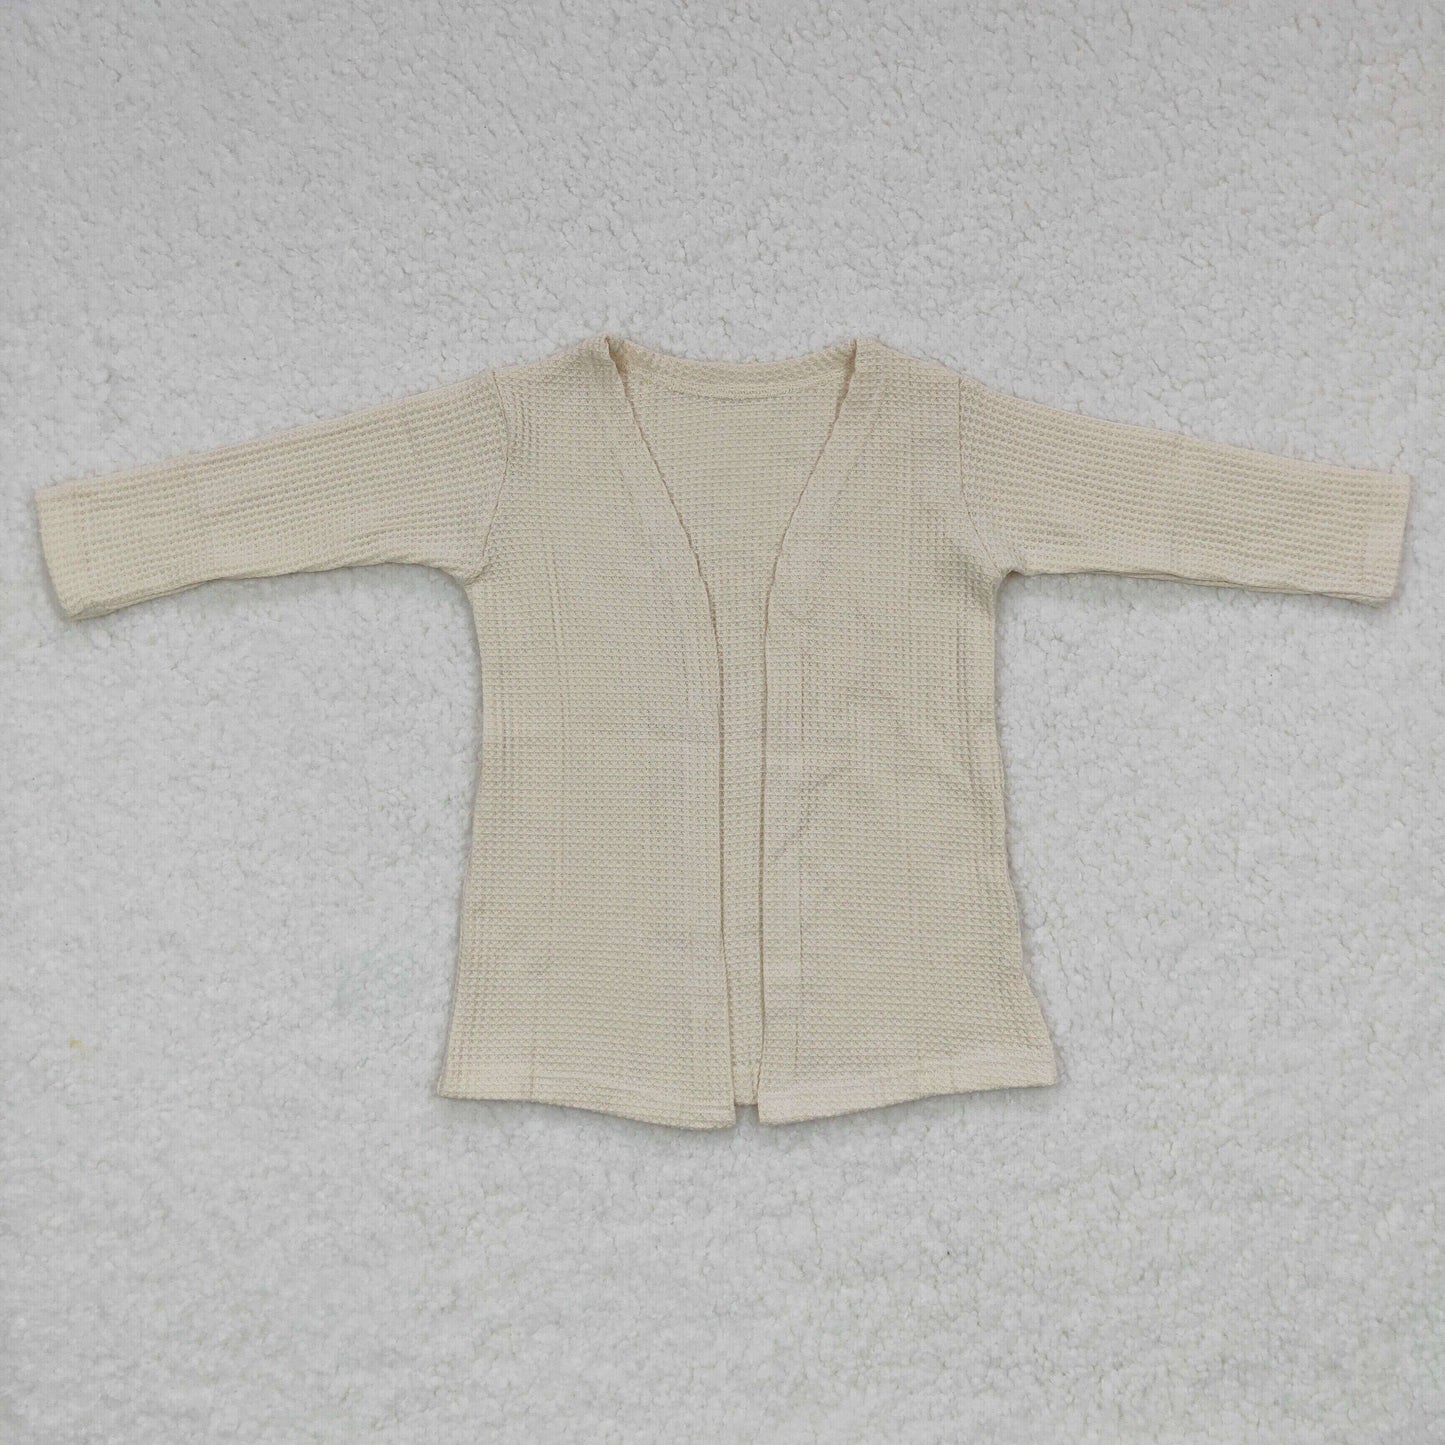 Cream long sleeve cardigan coat